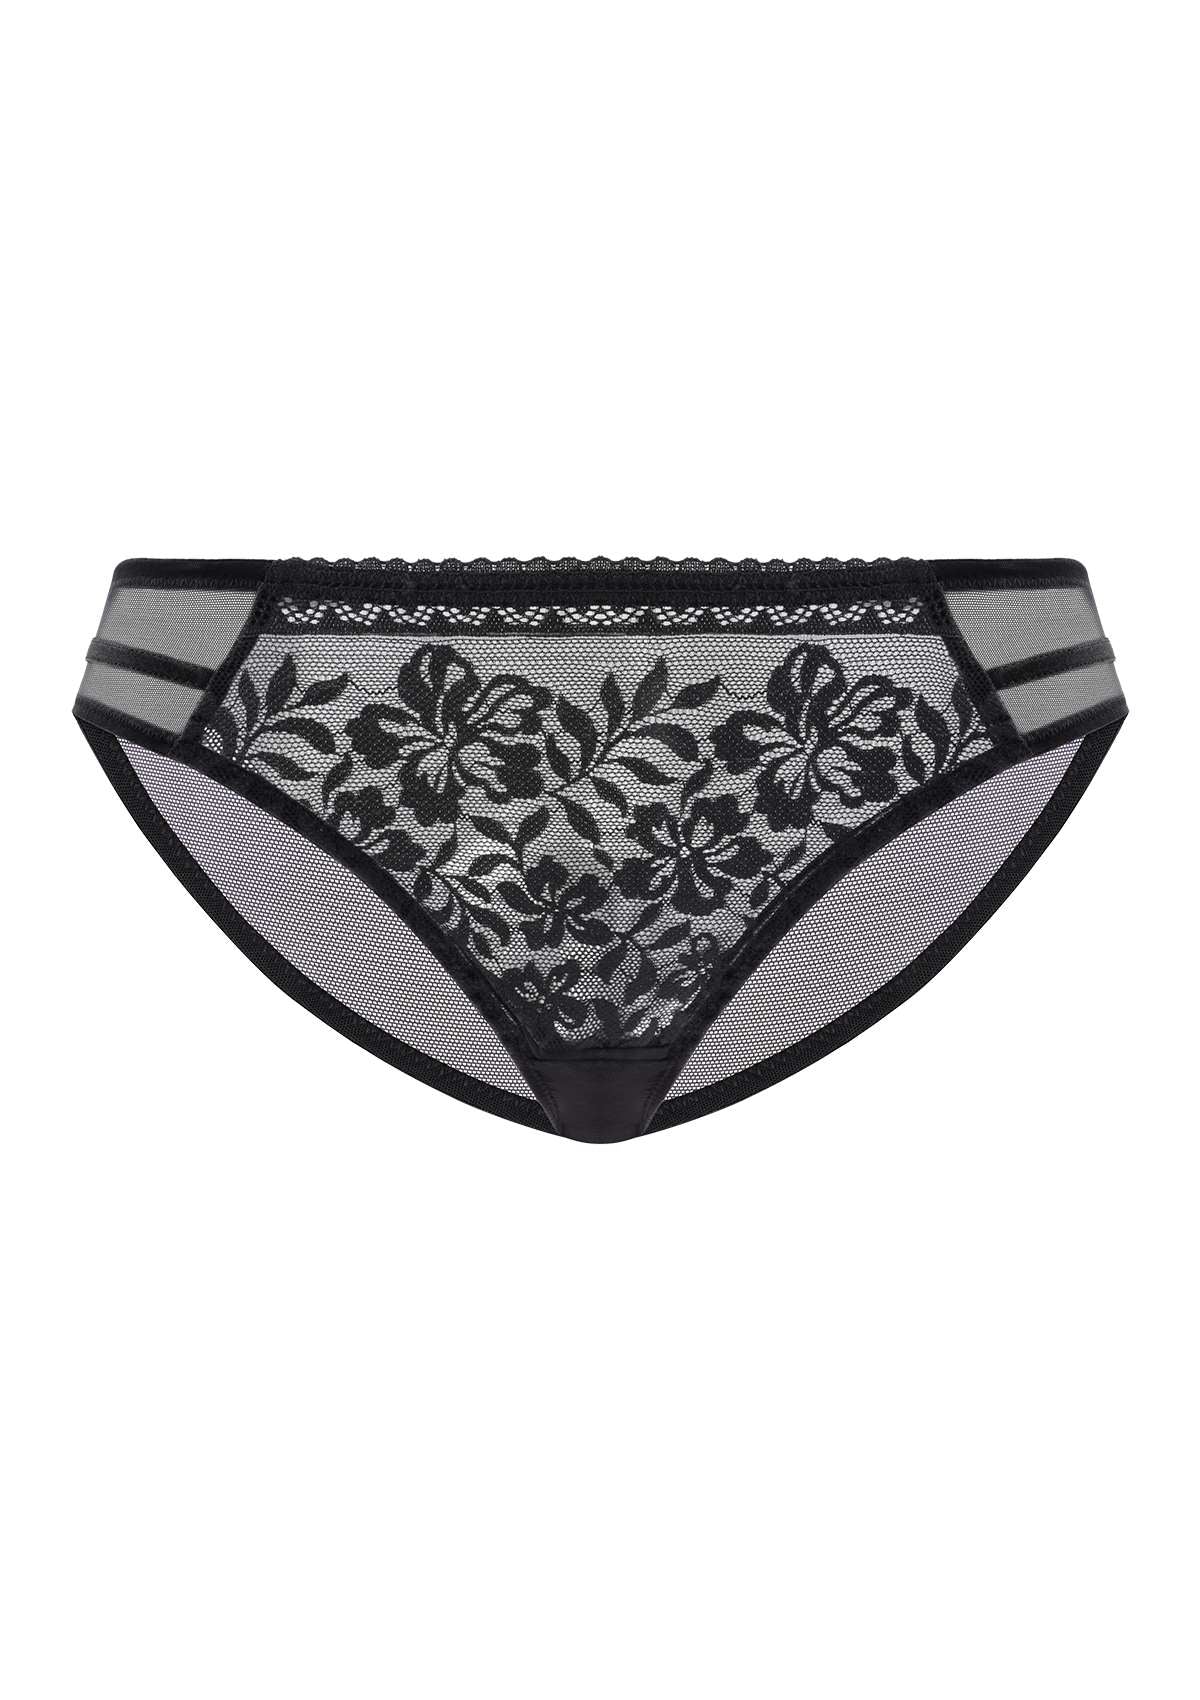 HSIA Gladioli Floral Lace Mesh Airy Elegant Beautiful Bikini Underwear - XL / Peach